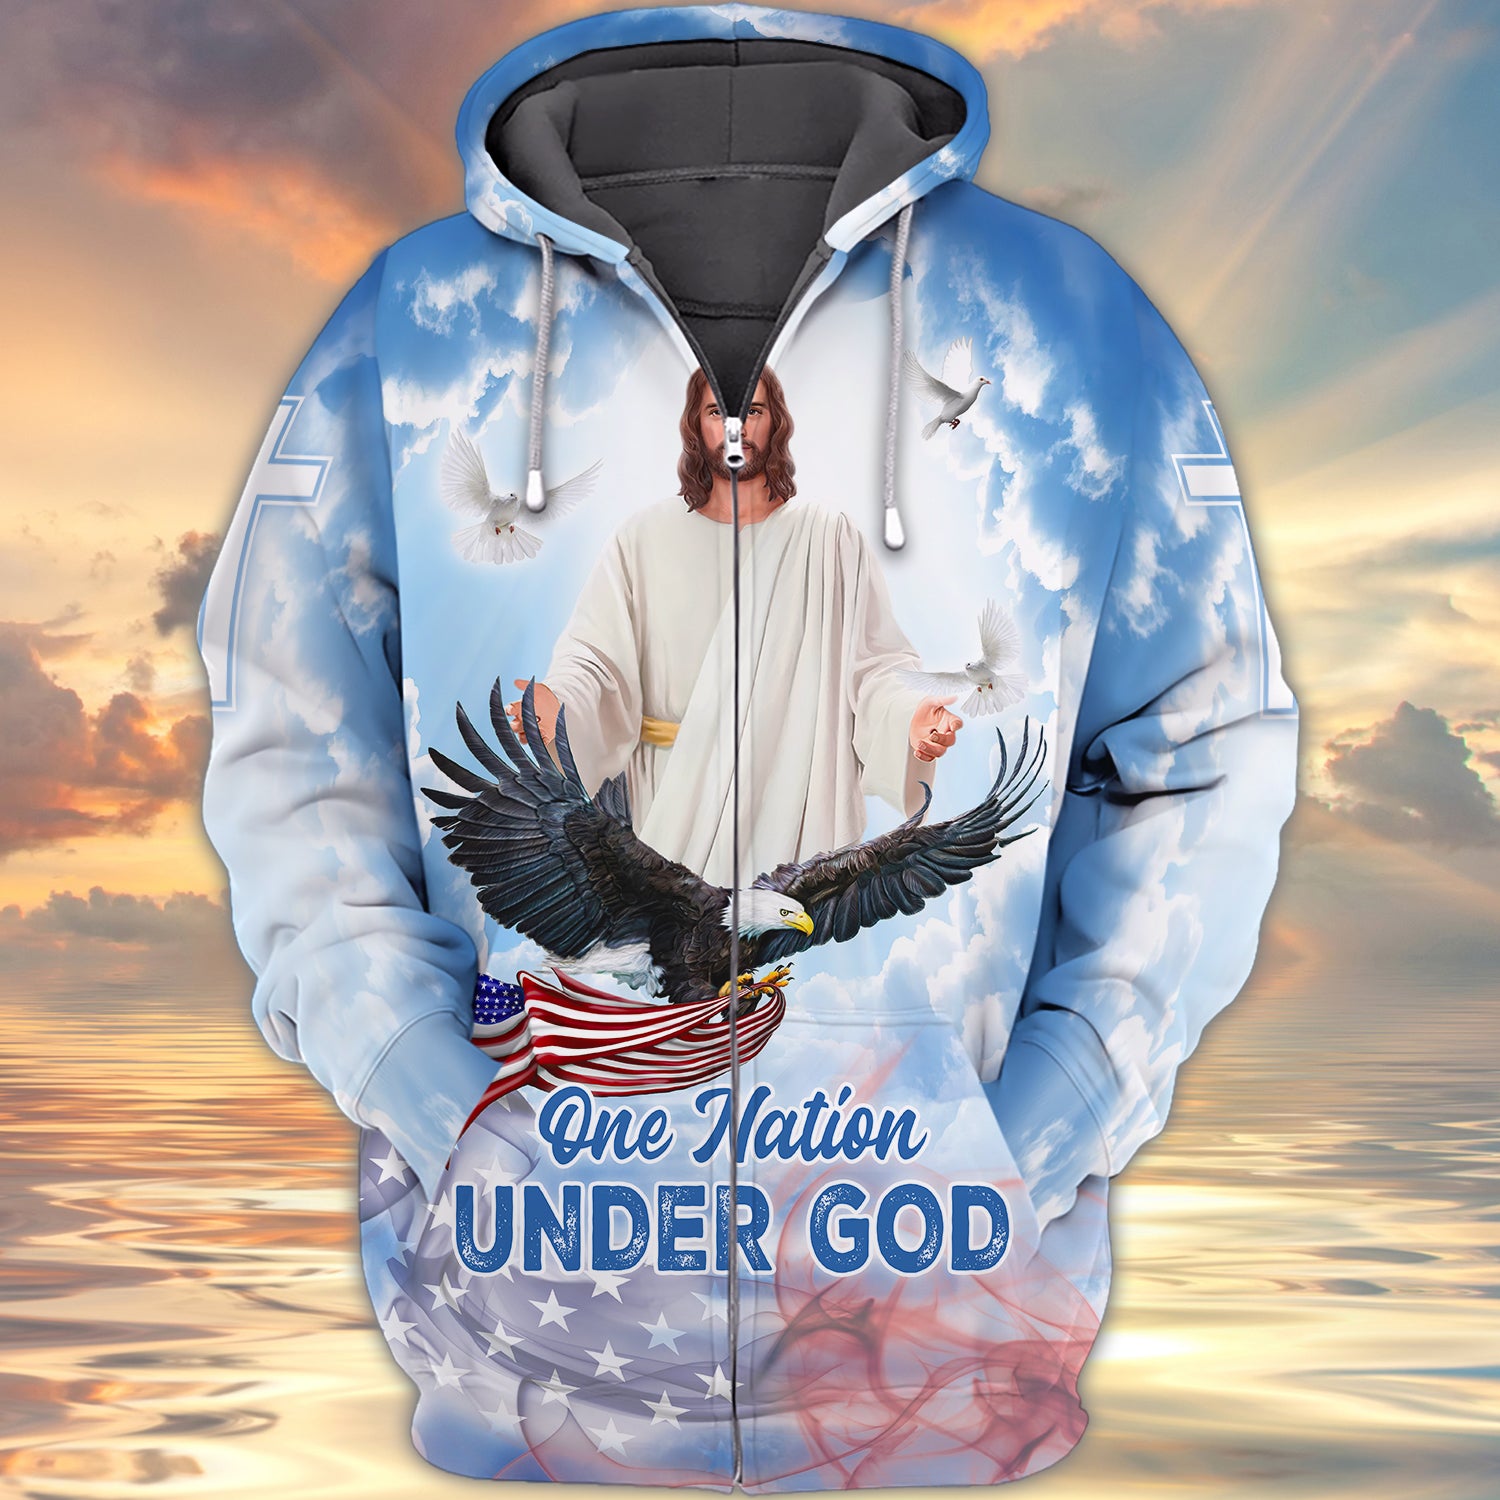 One nation under god 3d full print shirt gift for christian 1859 htv